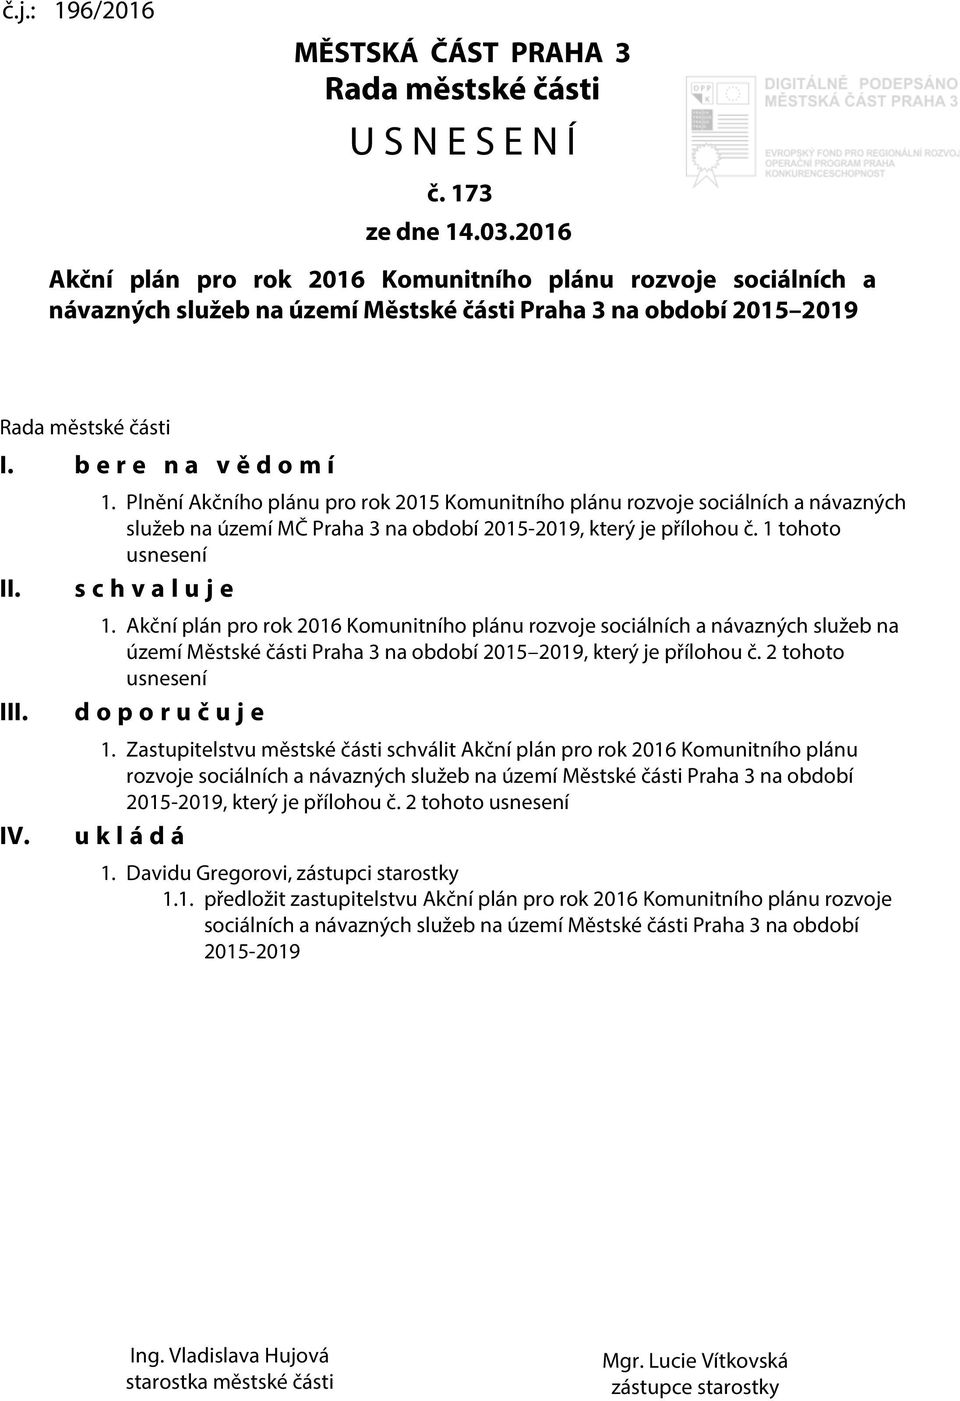 Plnění Akčního plánu pro rok 2015 Komunitního plánu rozvoje sociálních a návazných služeb na území MČ Praha 3 na období 2015-2019, který je přílohou č. 1 tohoto usnesení s c h v a l u j e 1.